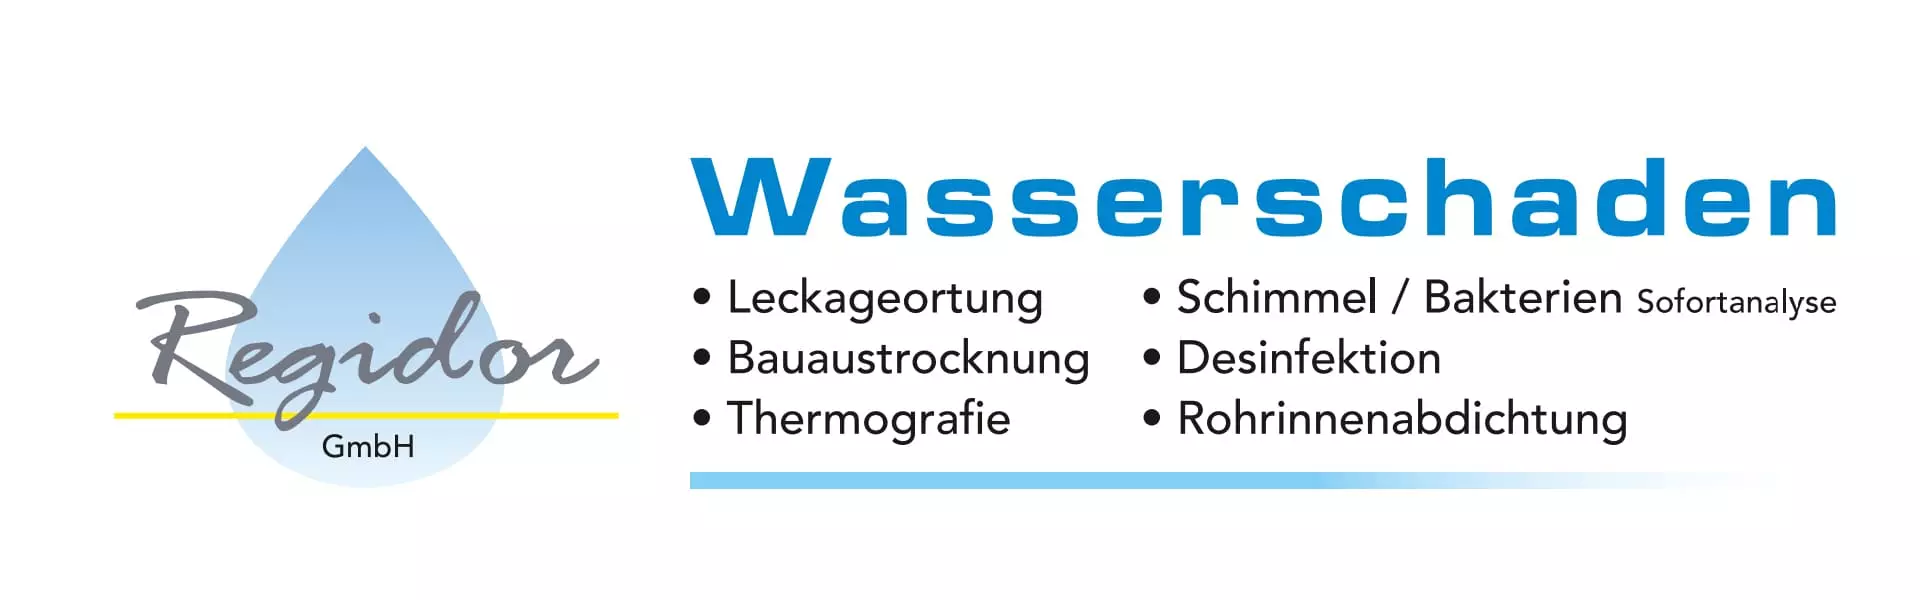 Regidor GmbH Wasserschaden